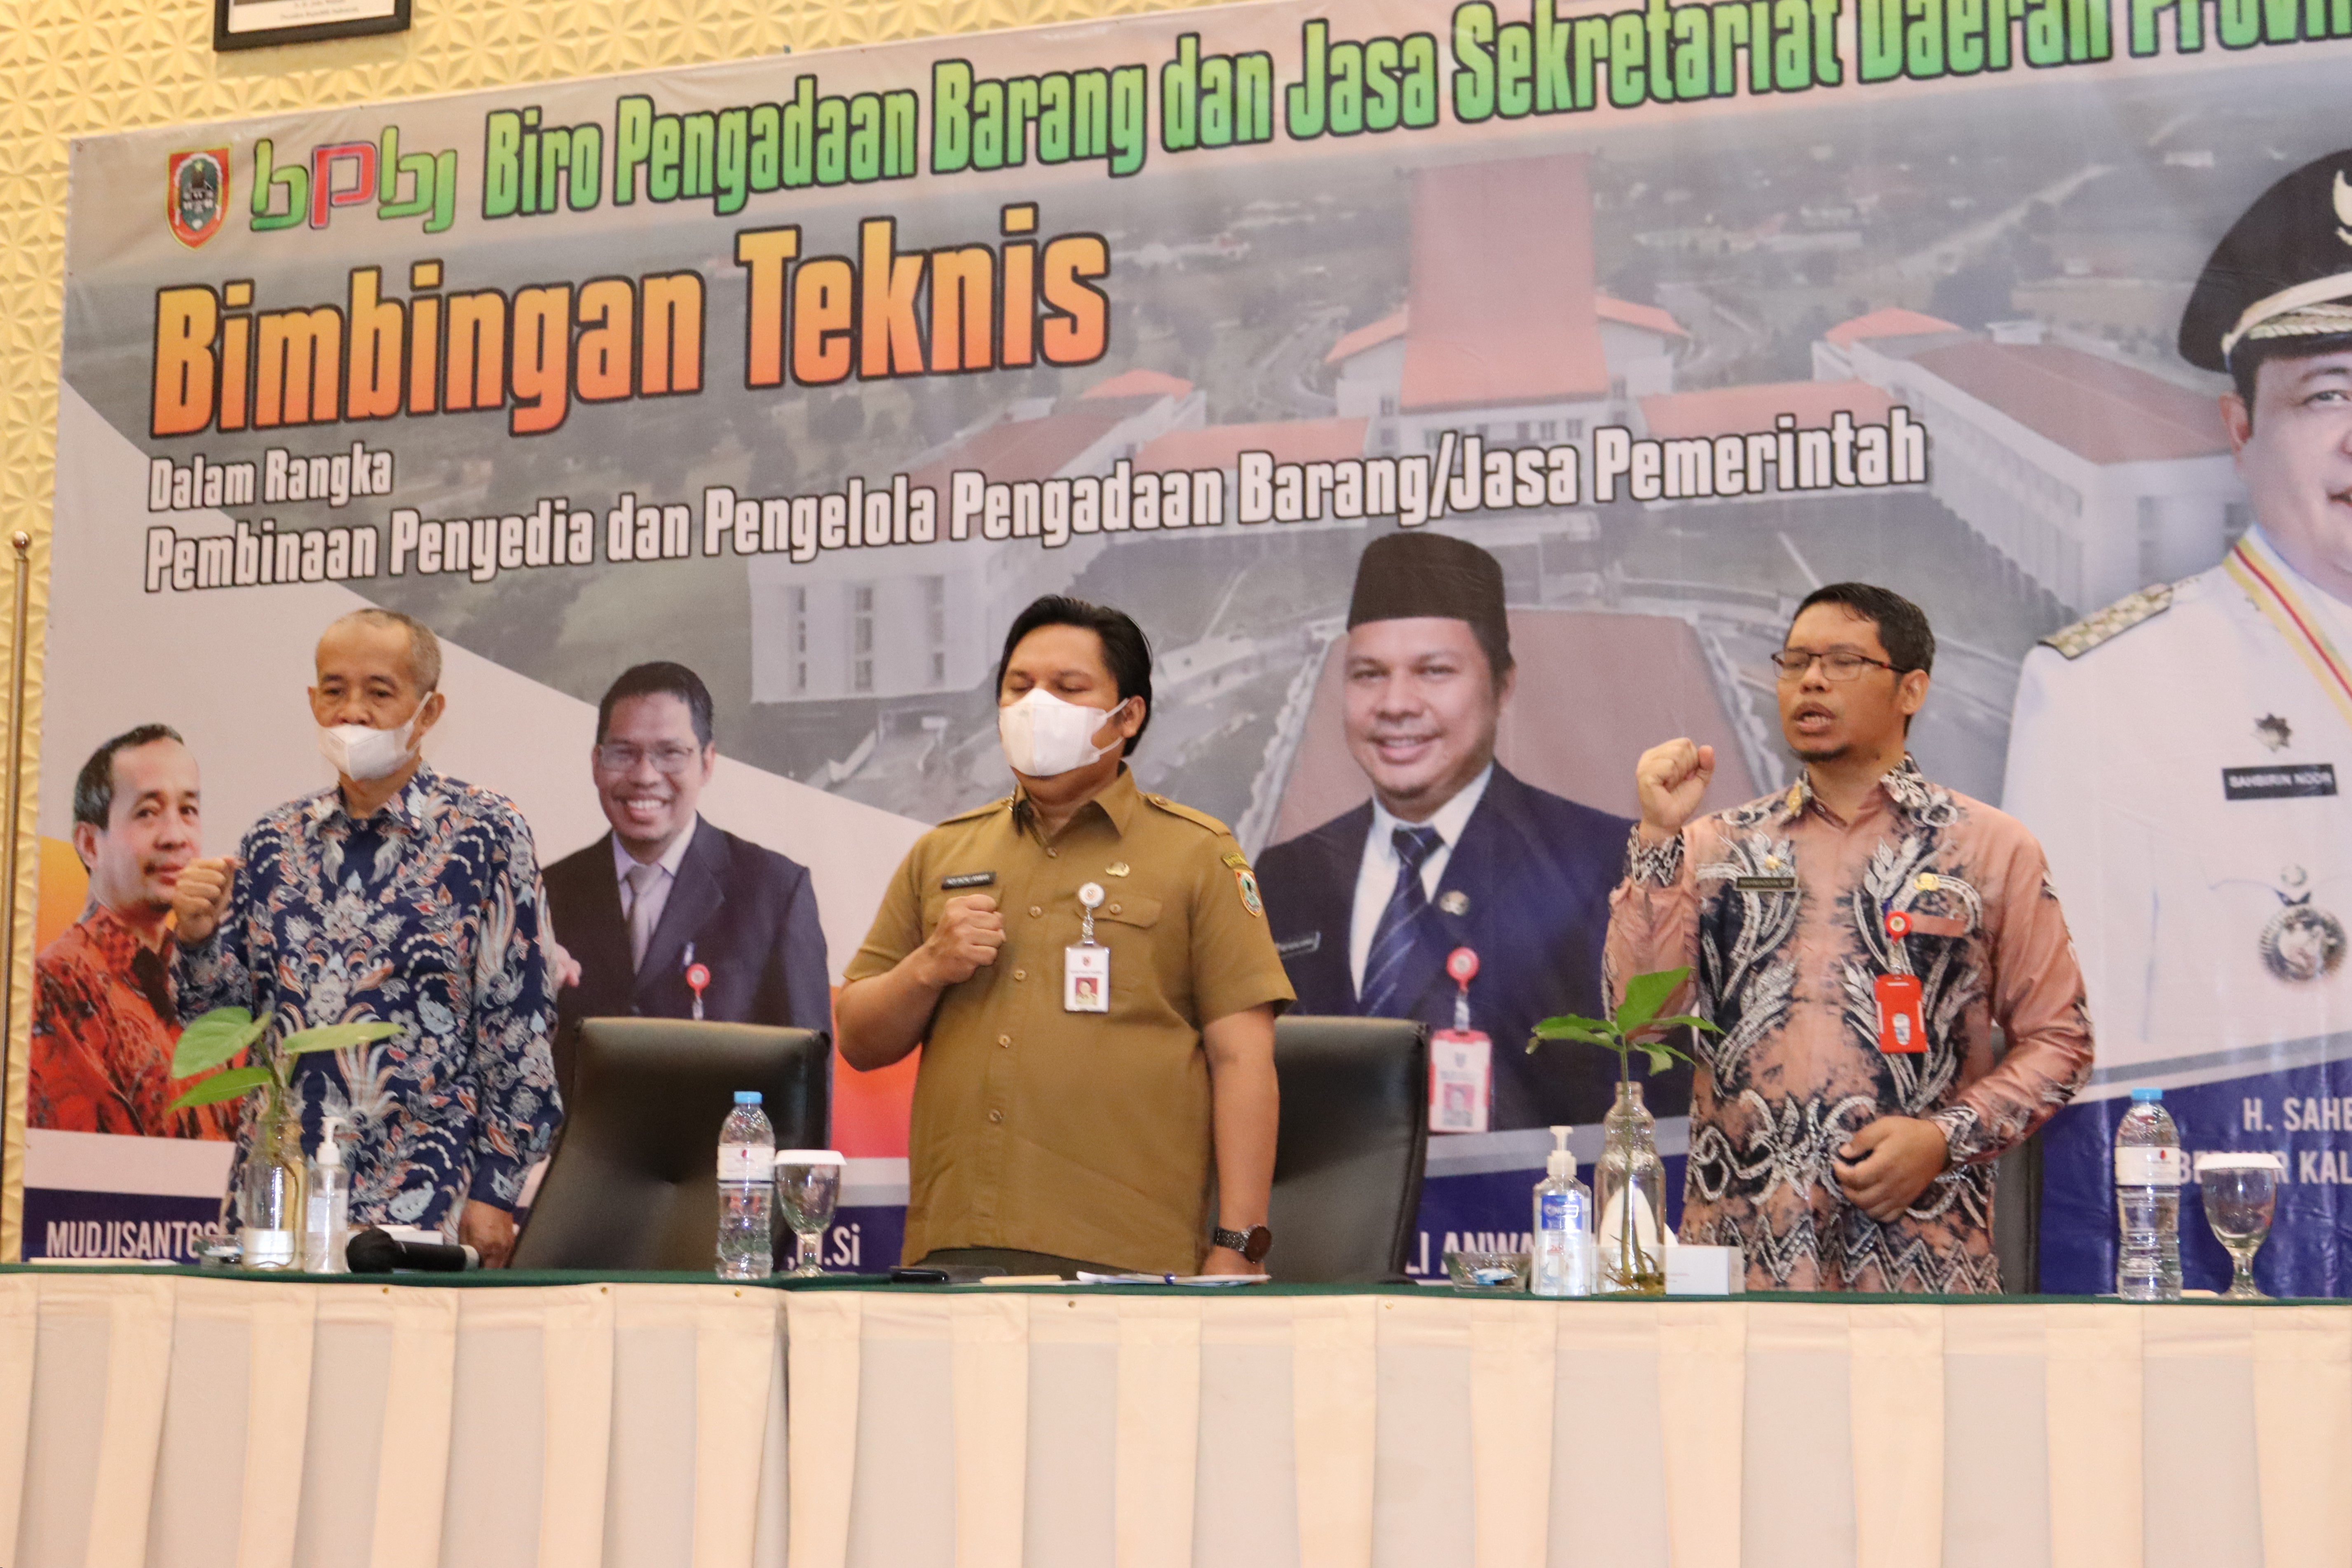 Pemerintah Provinsi Kalimantan Selatan melalui Biro Pengadaan Barang/Jasa Sekretariat Daerah melaksanakan Bimtek dalam rangka Pembinaan bagi Penyedia dan Pengelola Pengadaan Parang/Jasa Pemerintah